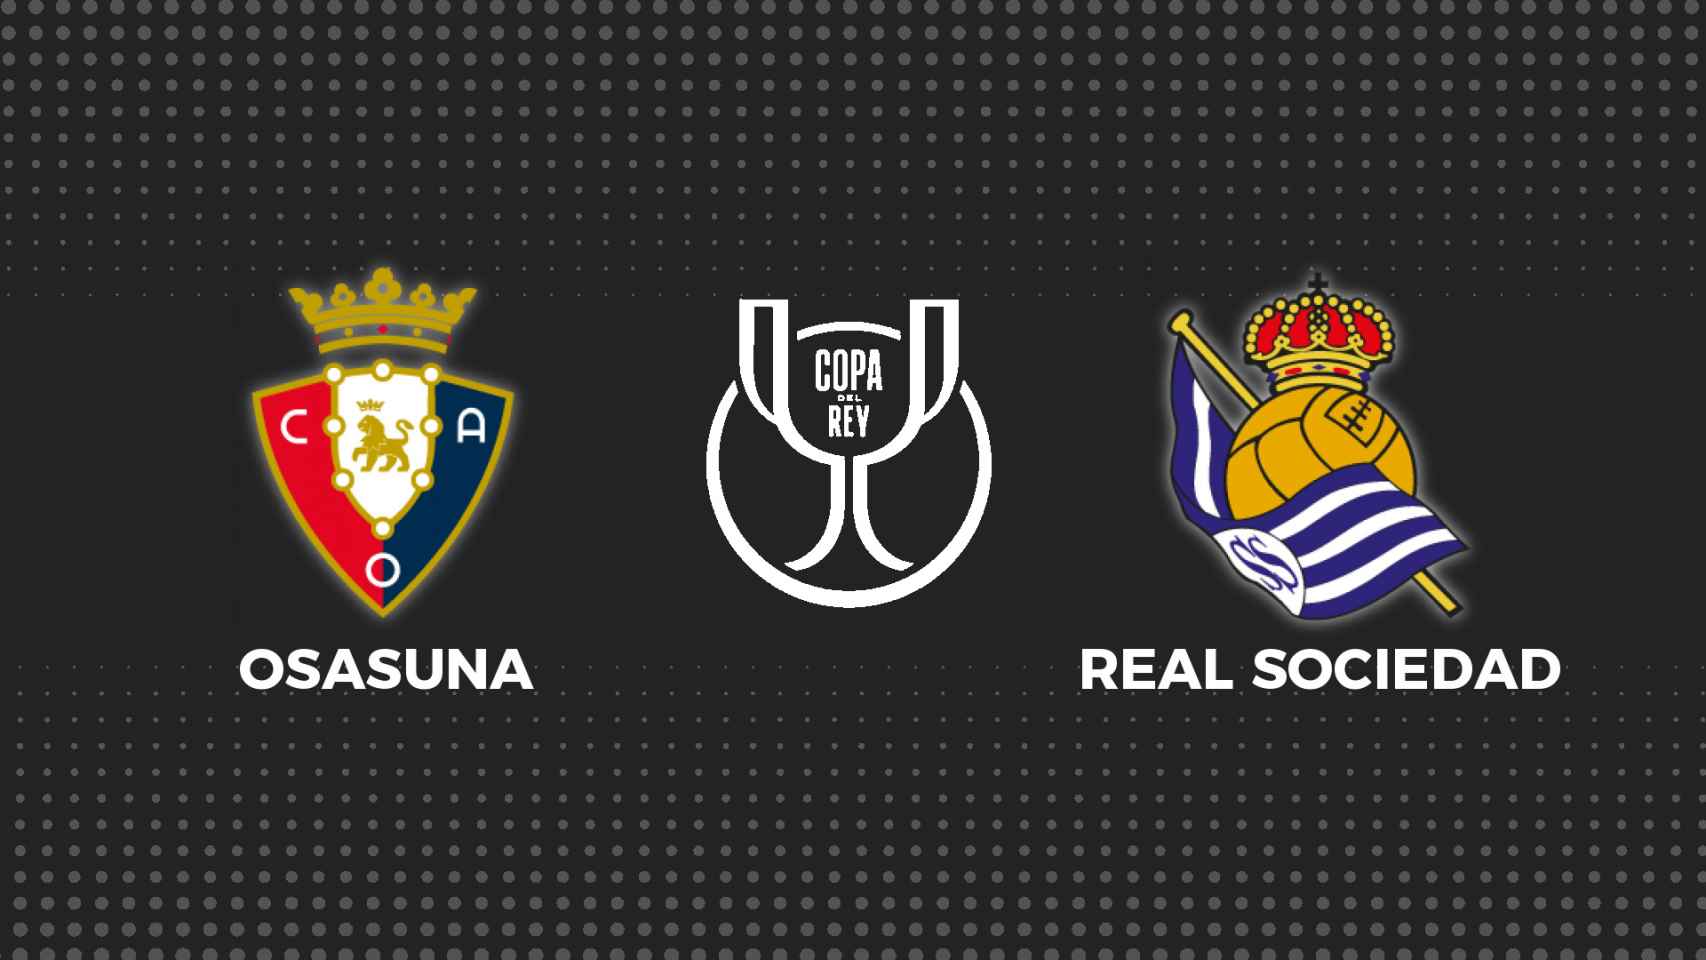 Osasuna - Real Sociedad, fútbol en directo